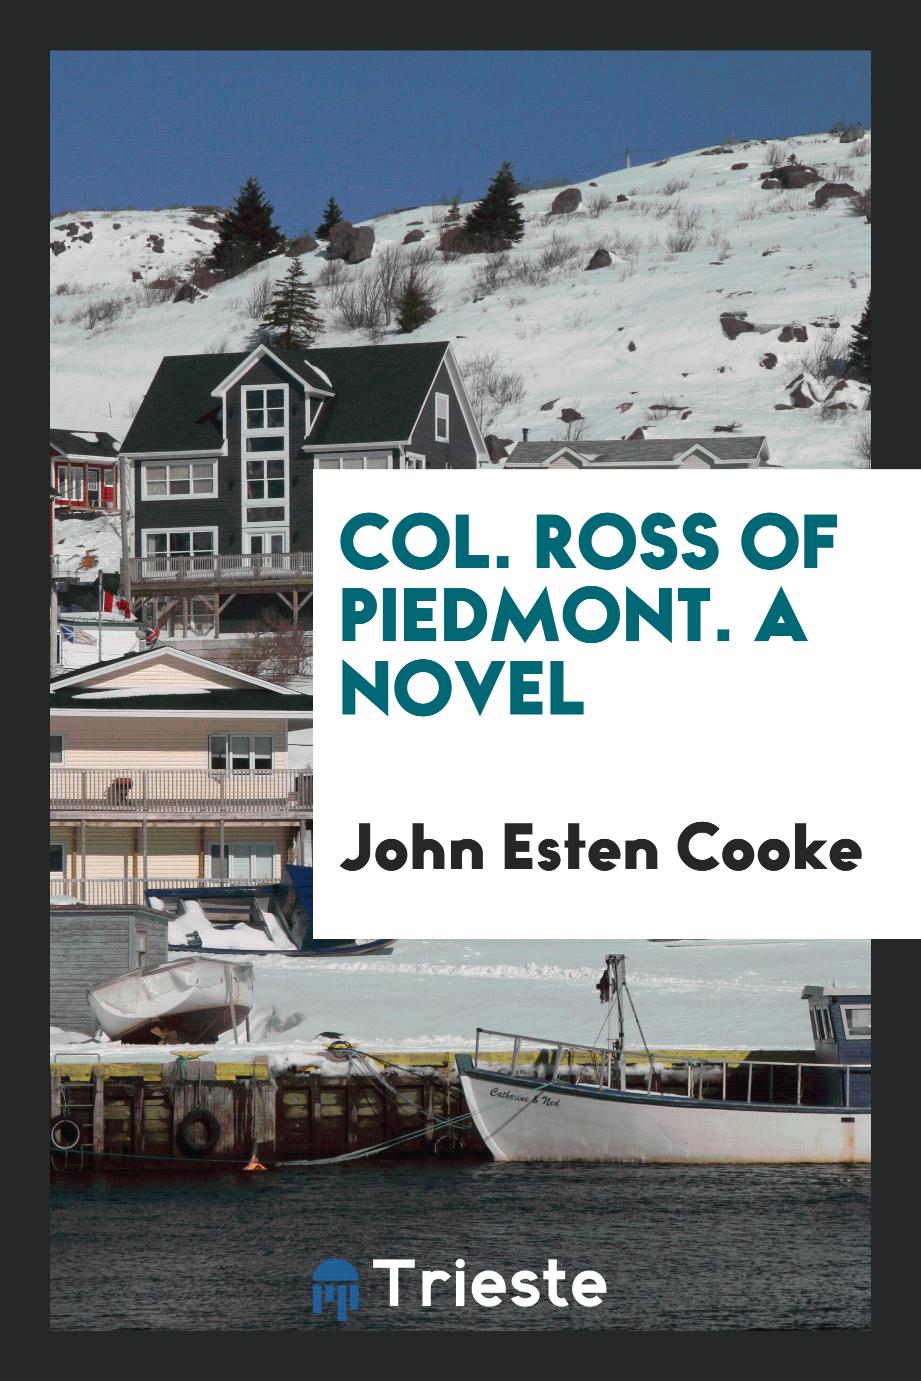 Col. Ross of Piedmont. A novel